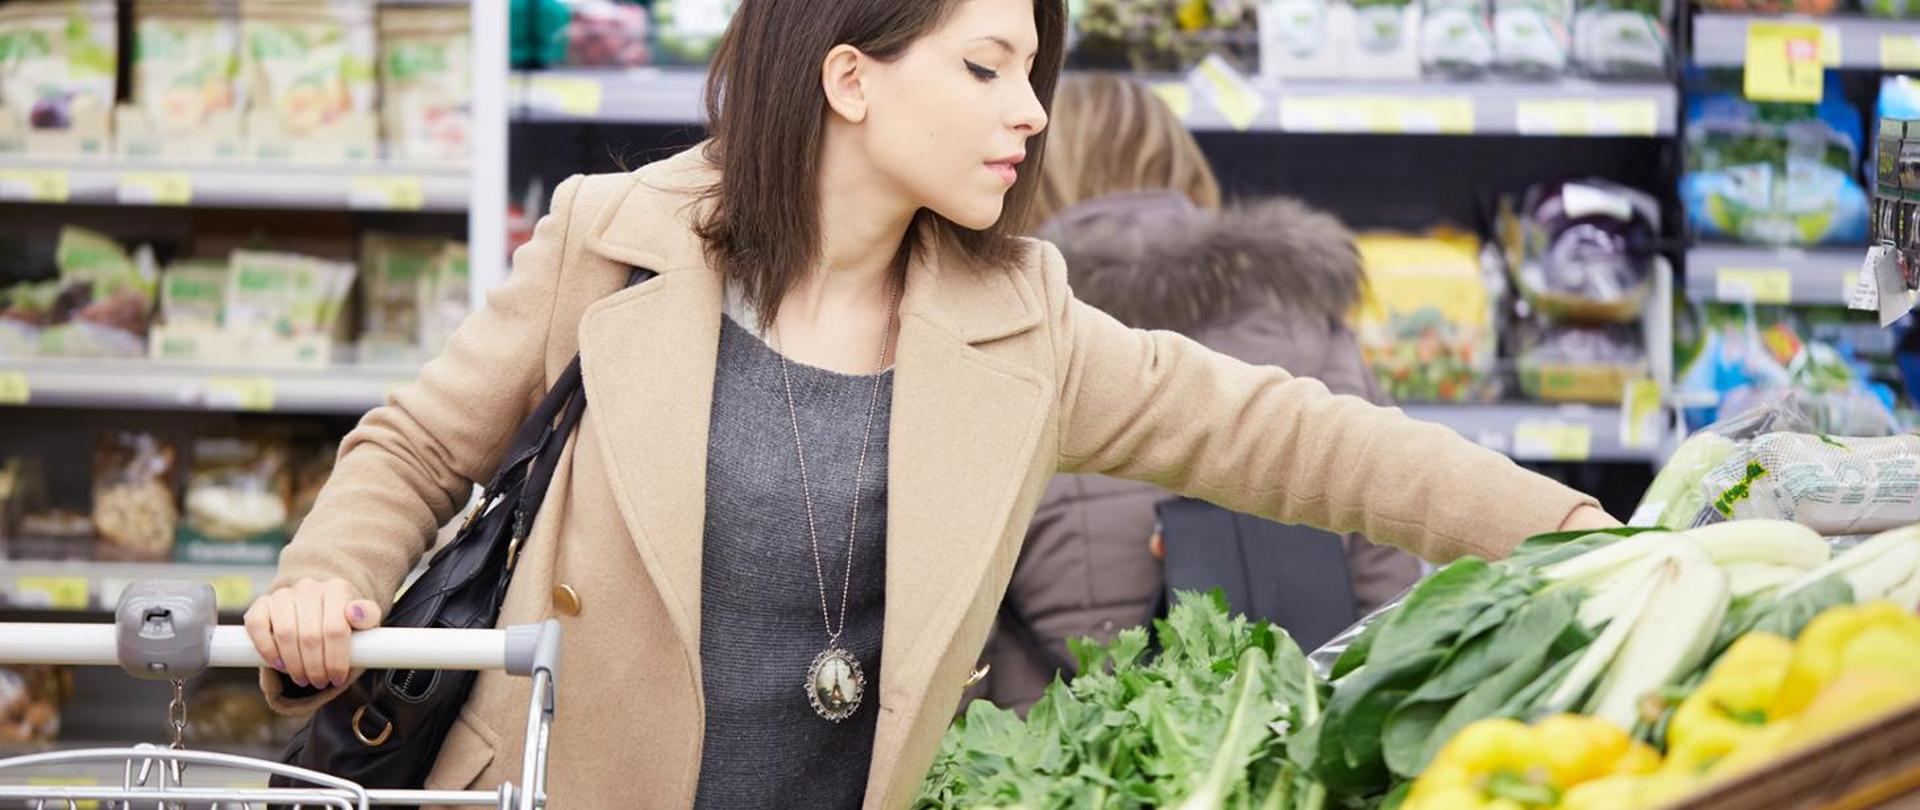 Zdjęcie przedstawia kobietę z wózkiem sklepowym robiąca zakupy na dziale warzywnym